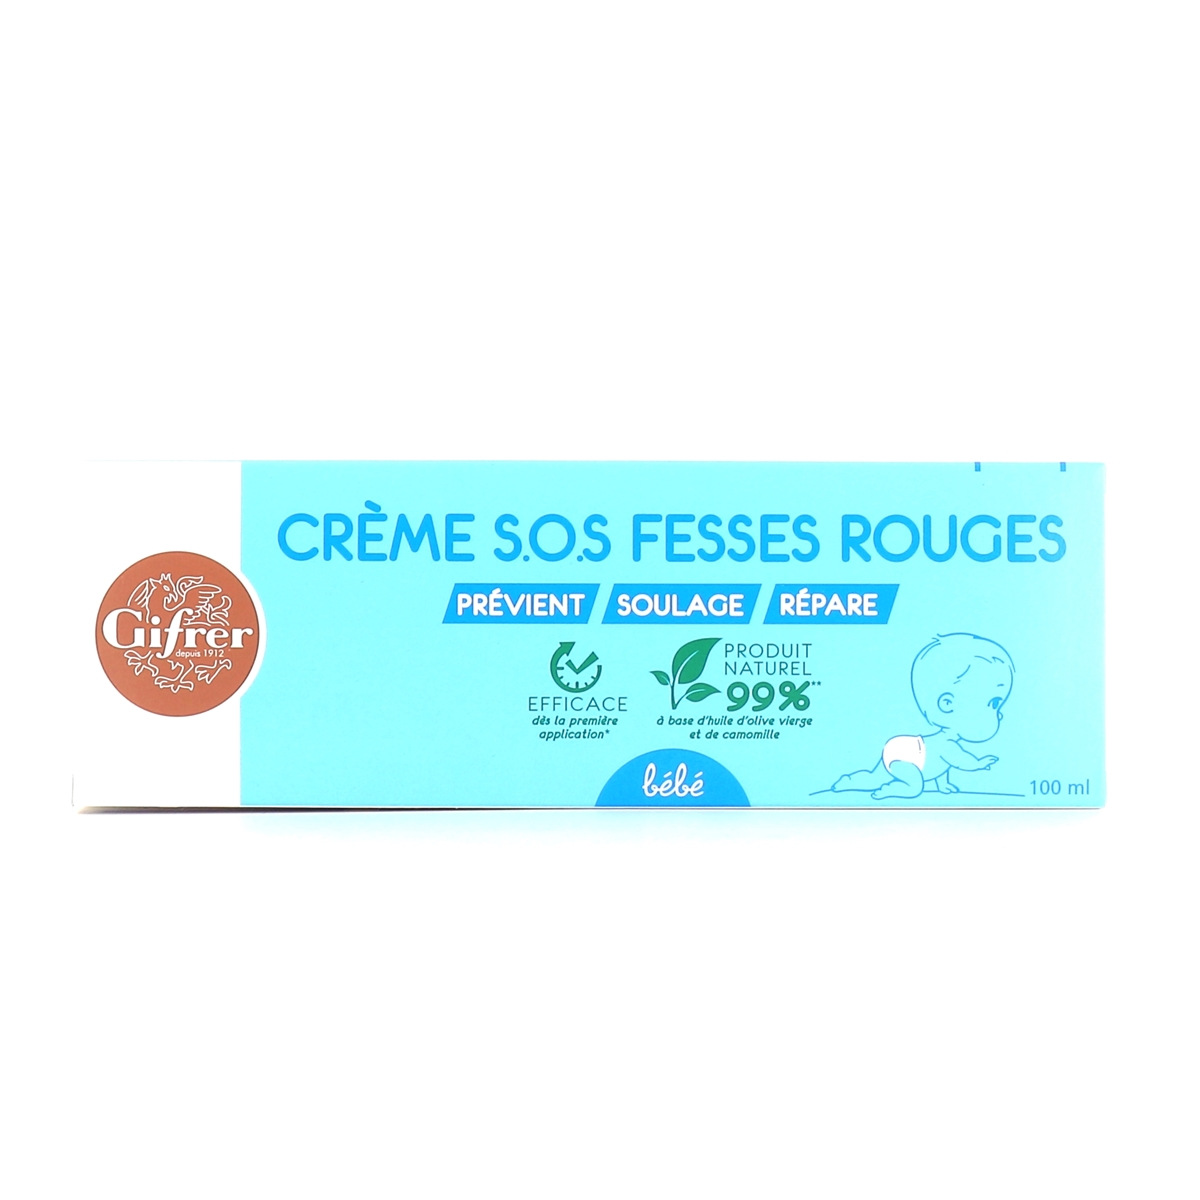 Crème SOS anti-rougeurs fesses rouges Gifrer